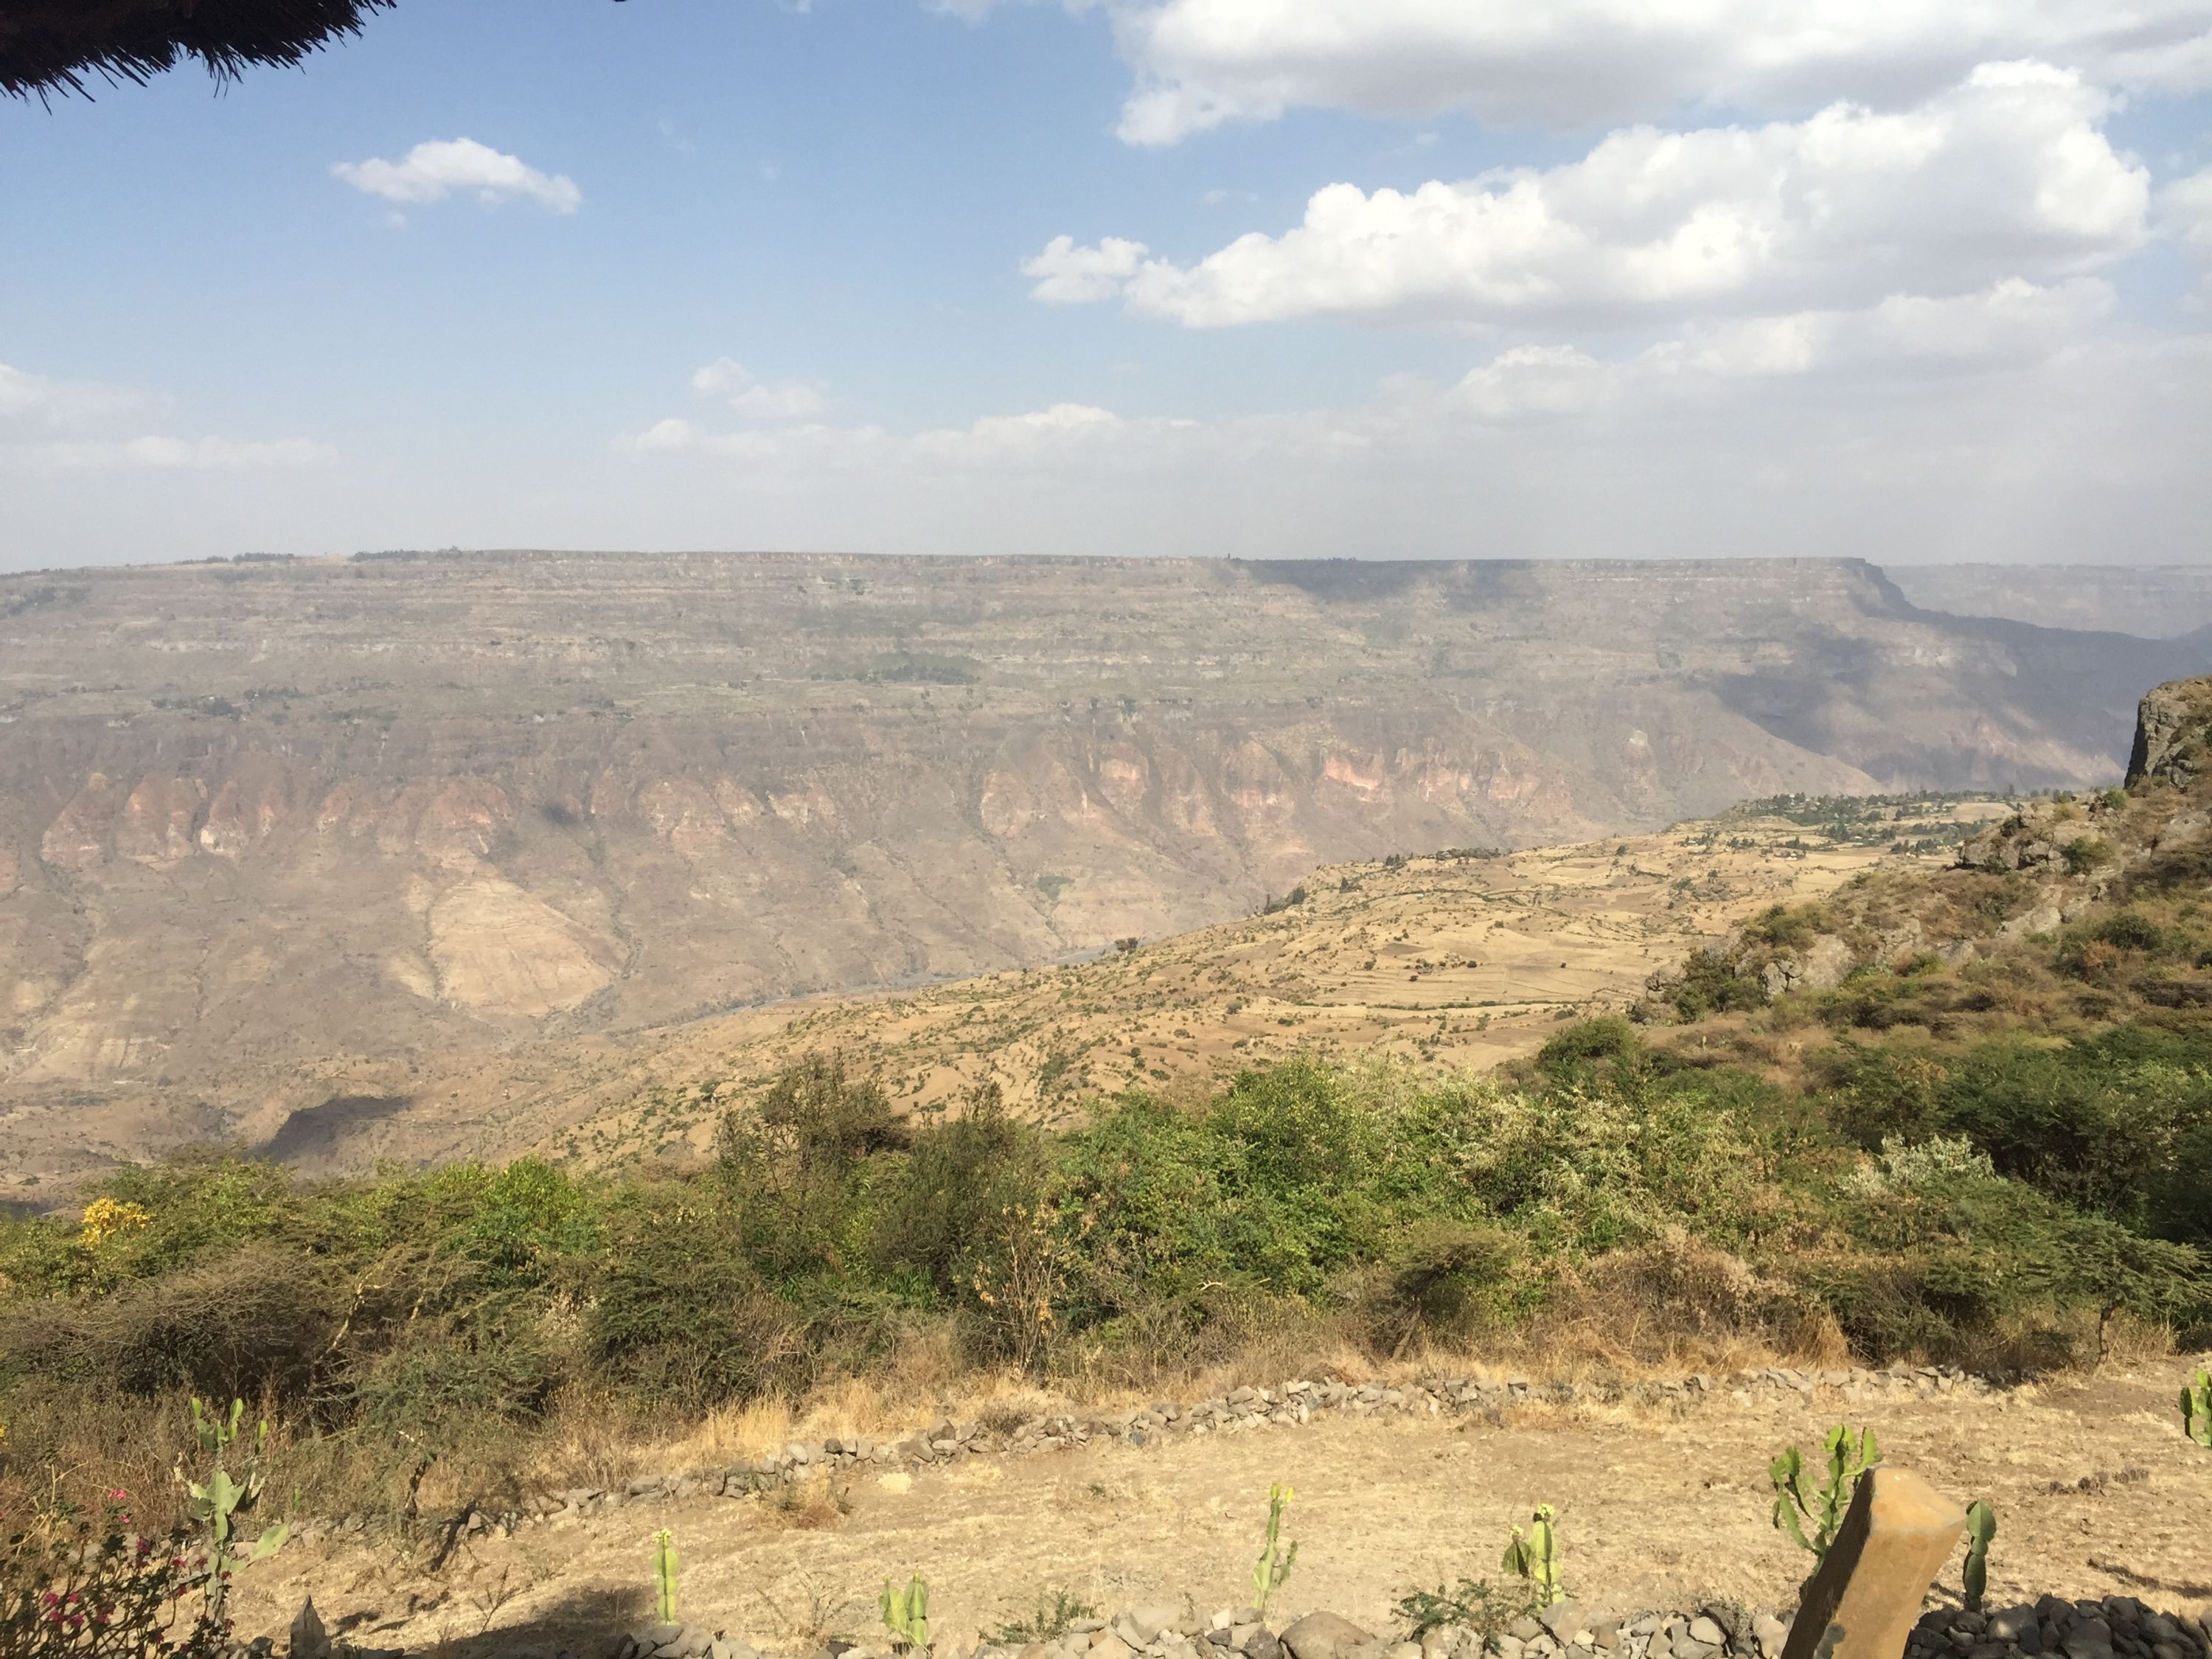 Blue Nile Gorge, Ethiopia